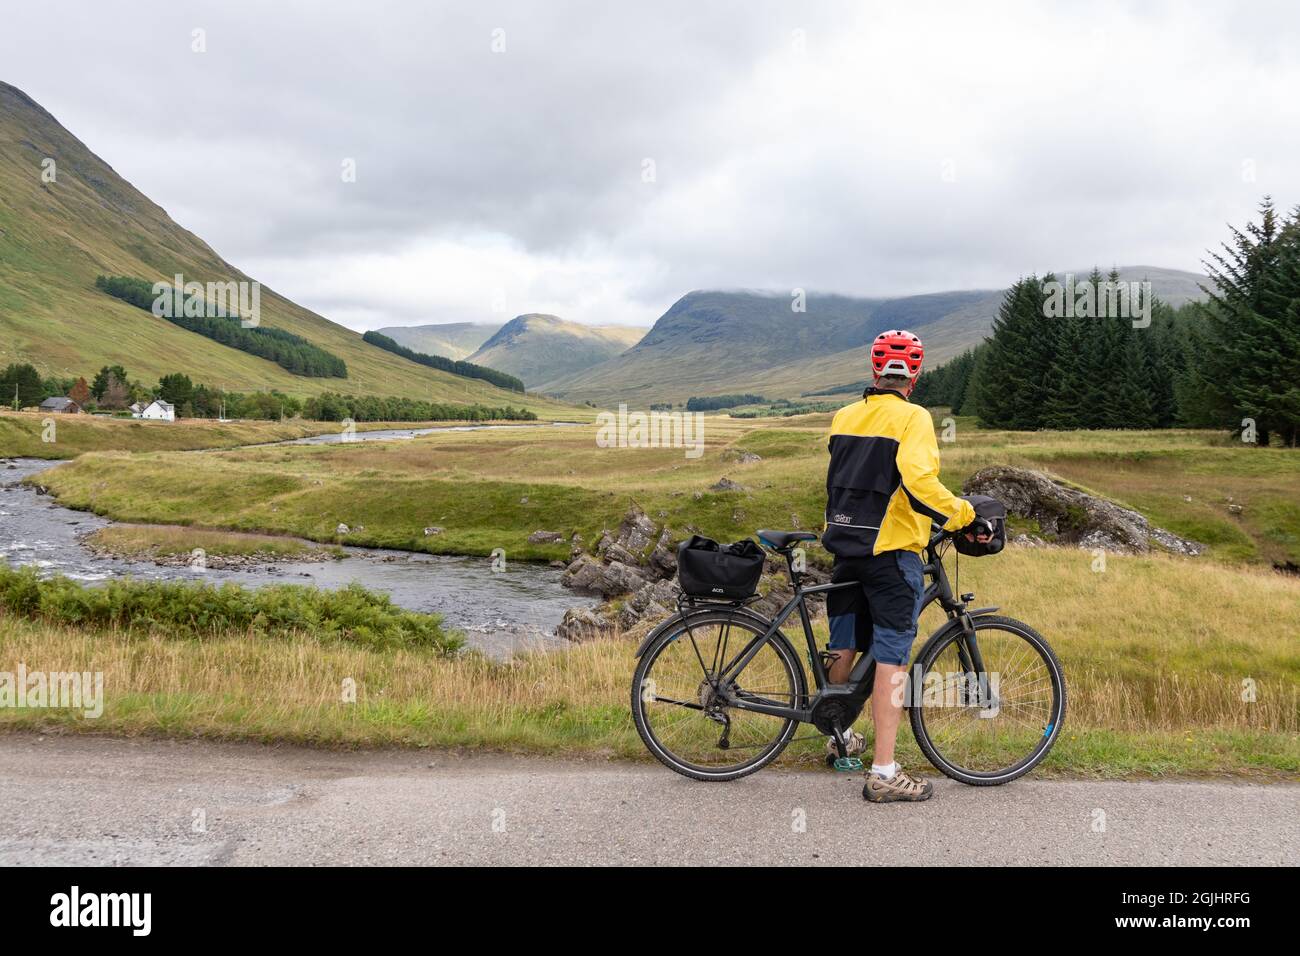 Cycling Glen Lyon, Perthshire, Scotland - cyclist looking at the view down Glen Lyon and River Lyon, Scotland, UK Stock Photo